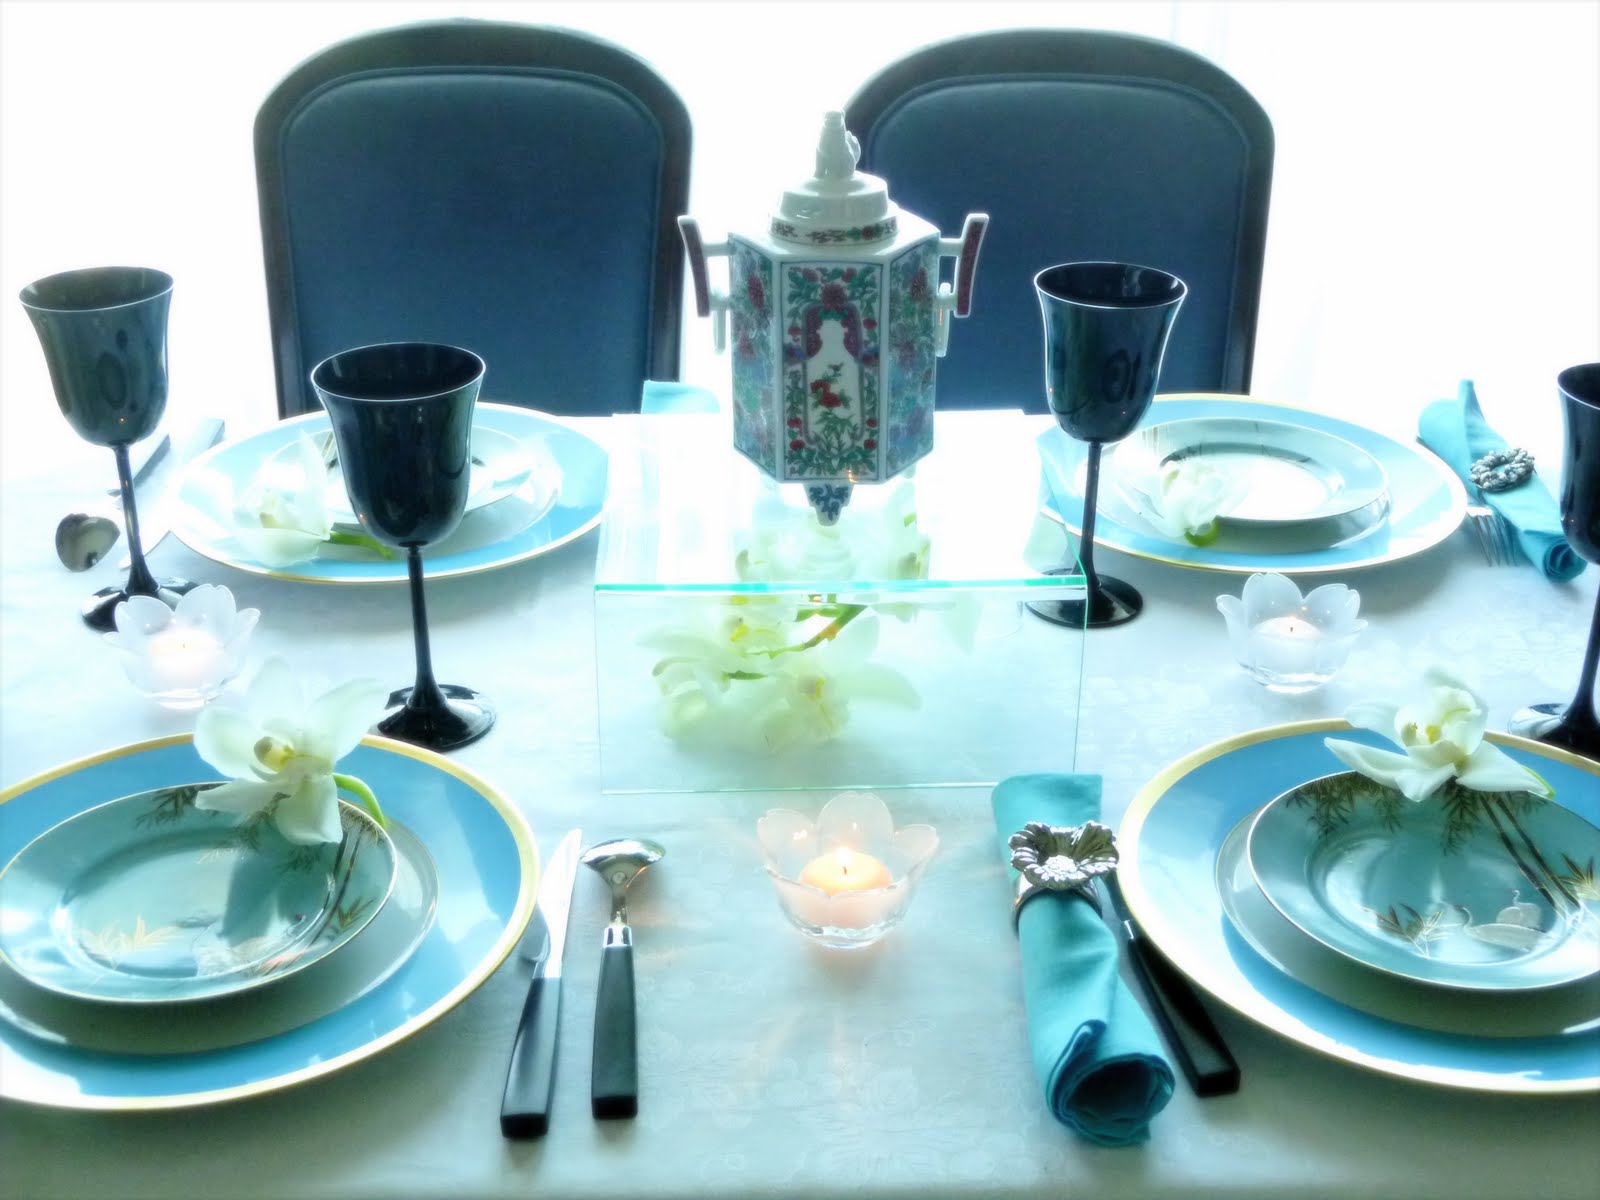 Come decorare la tavola in stile orientale, servizi e idee per uno stile esotico